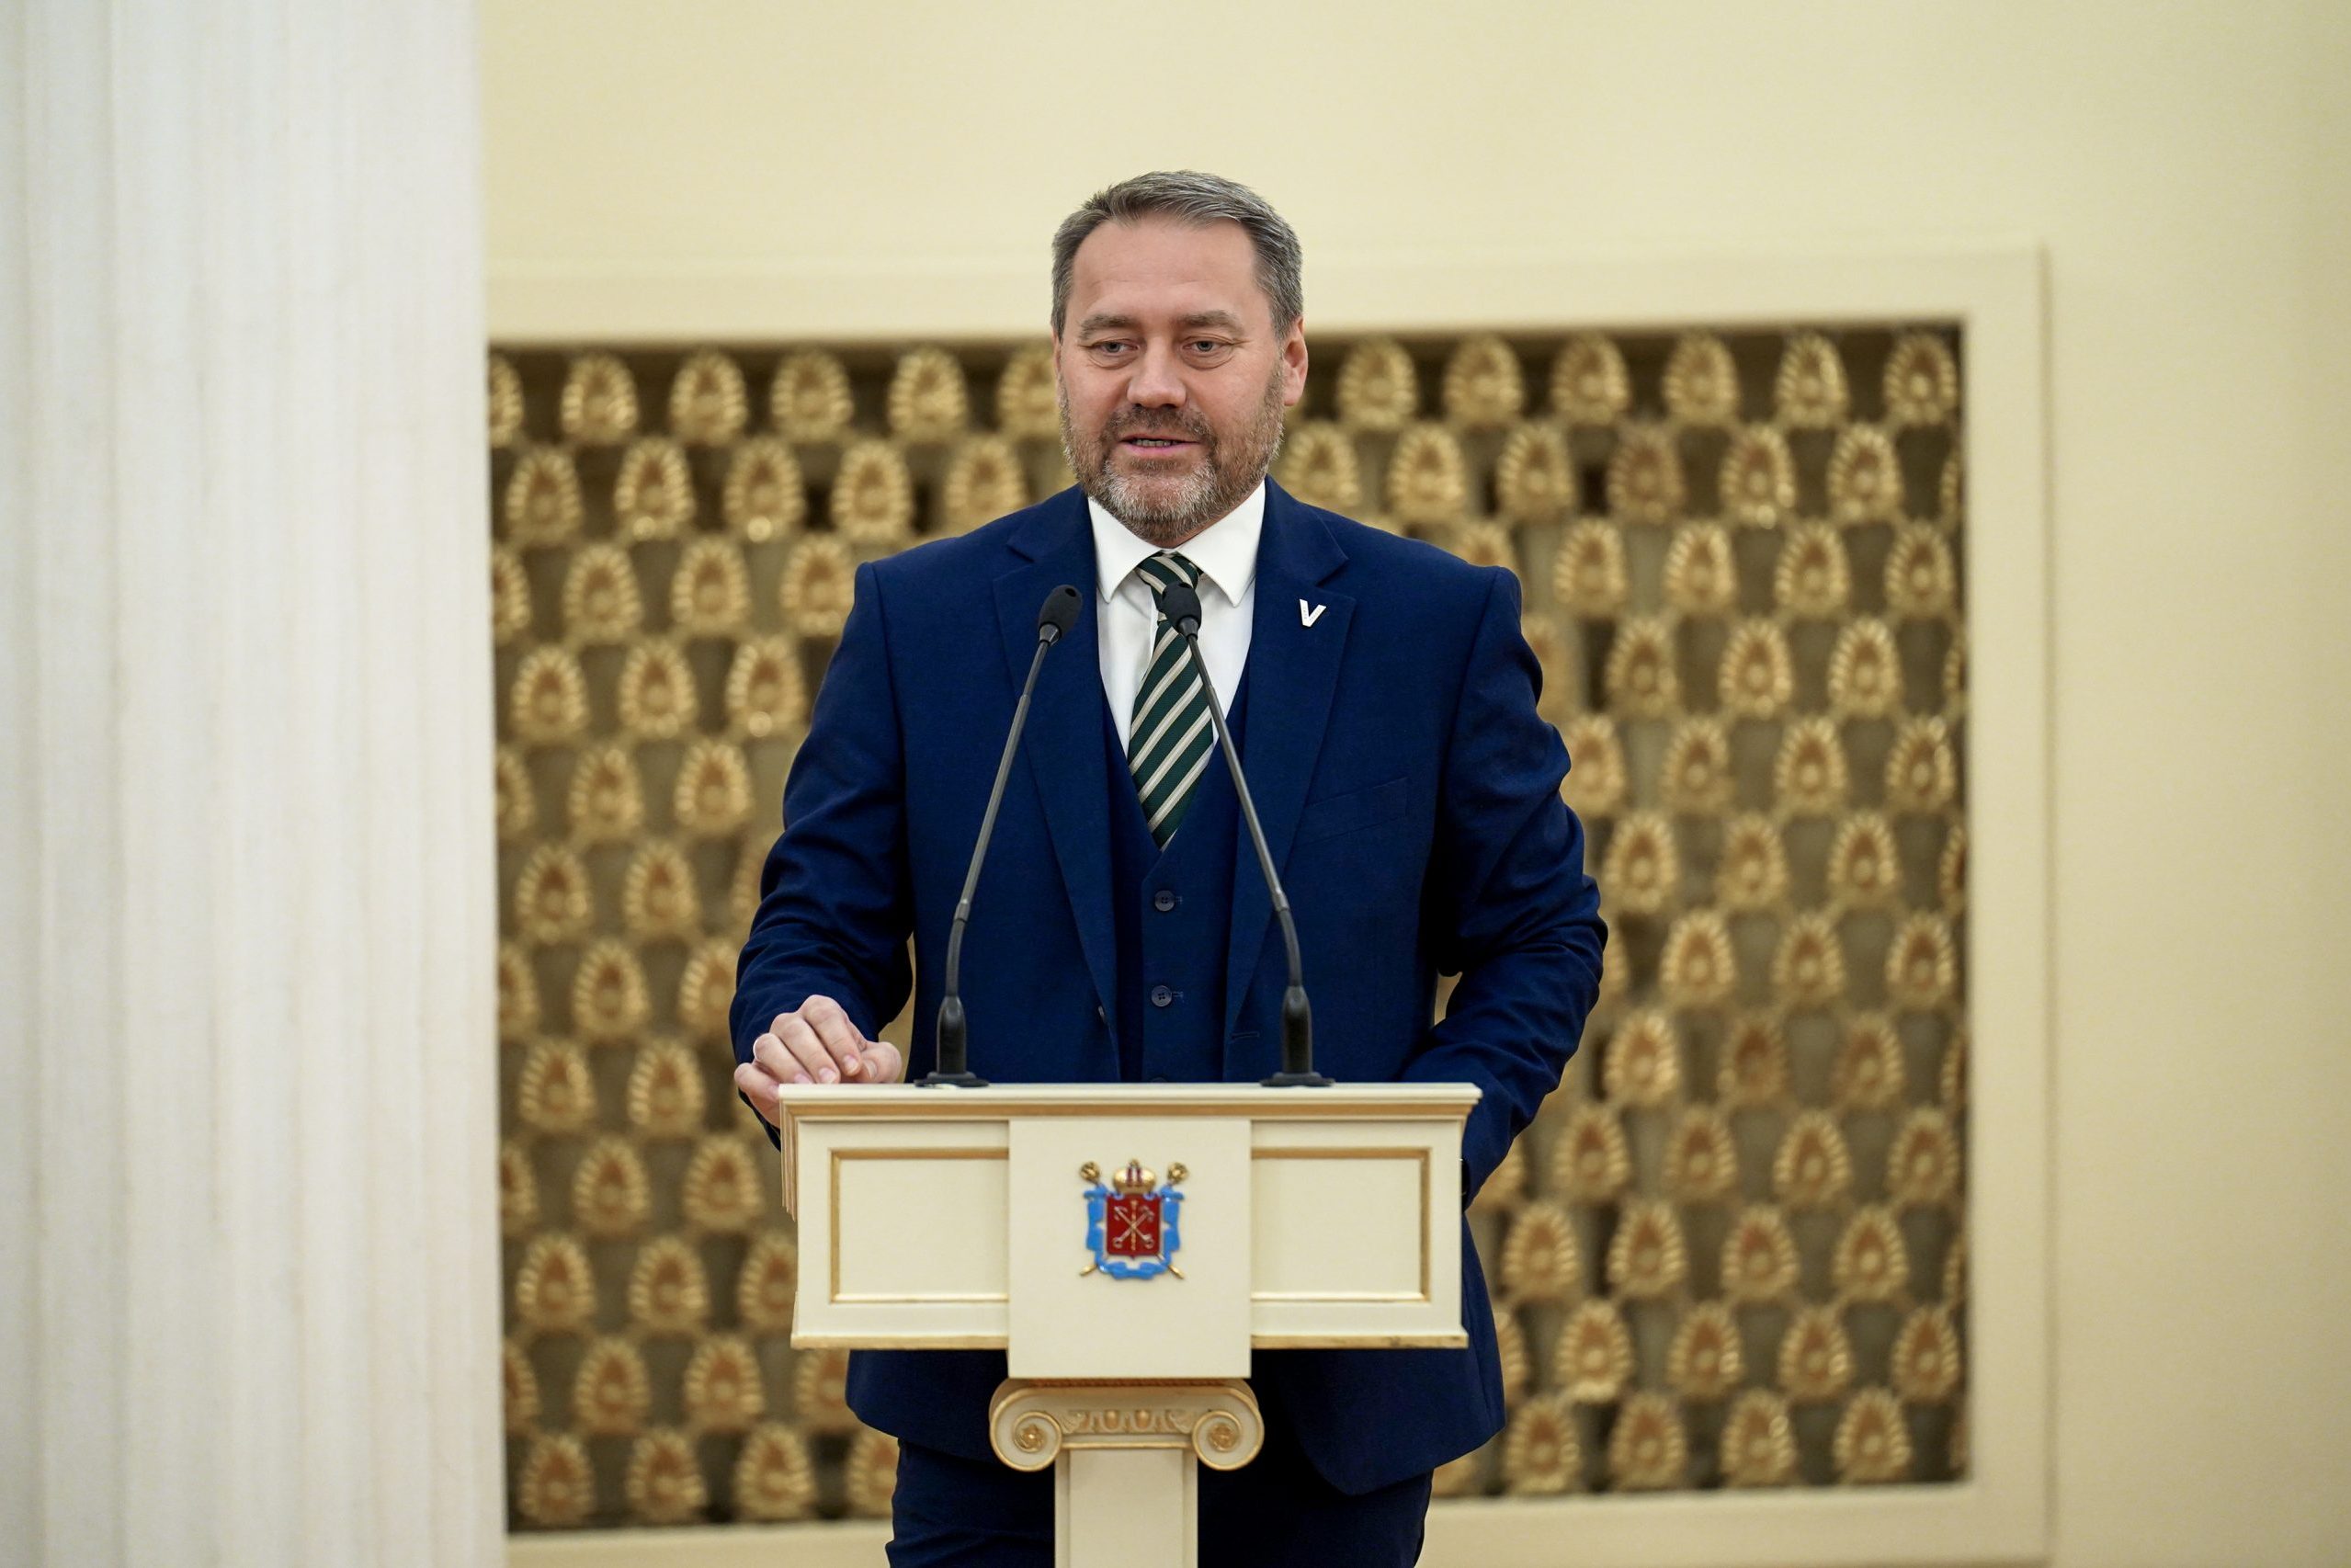 Парламенты Санкт-Петербурга и Республики Северная Осетия-Алания заключили соглашение о сотрудничестве